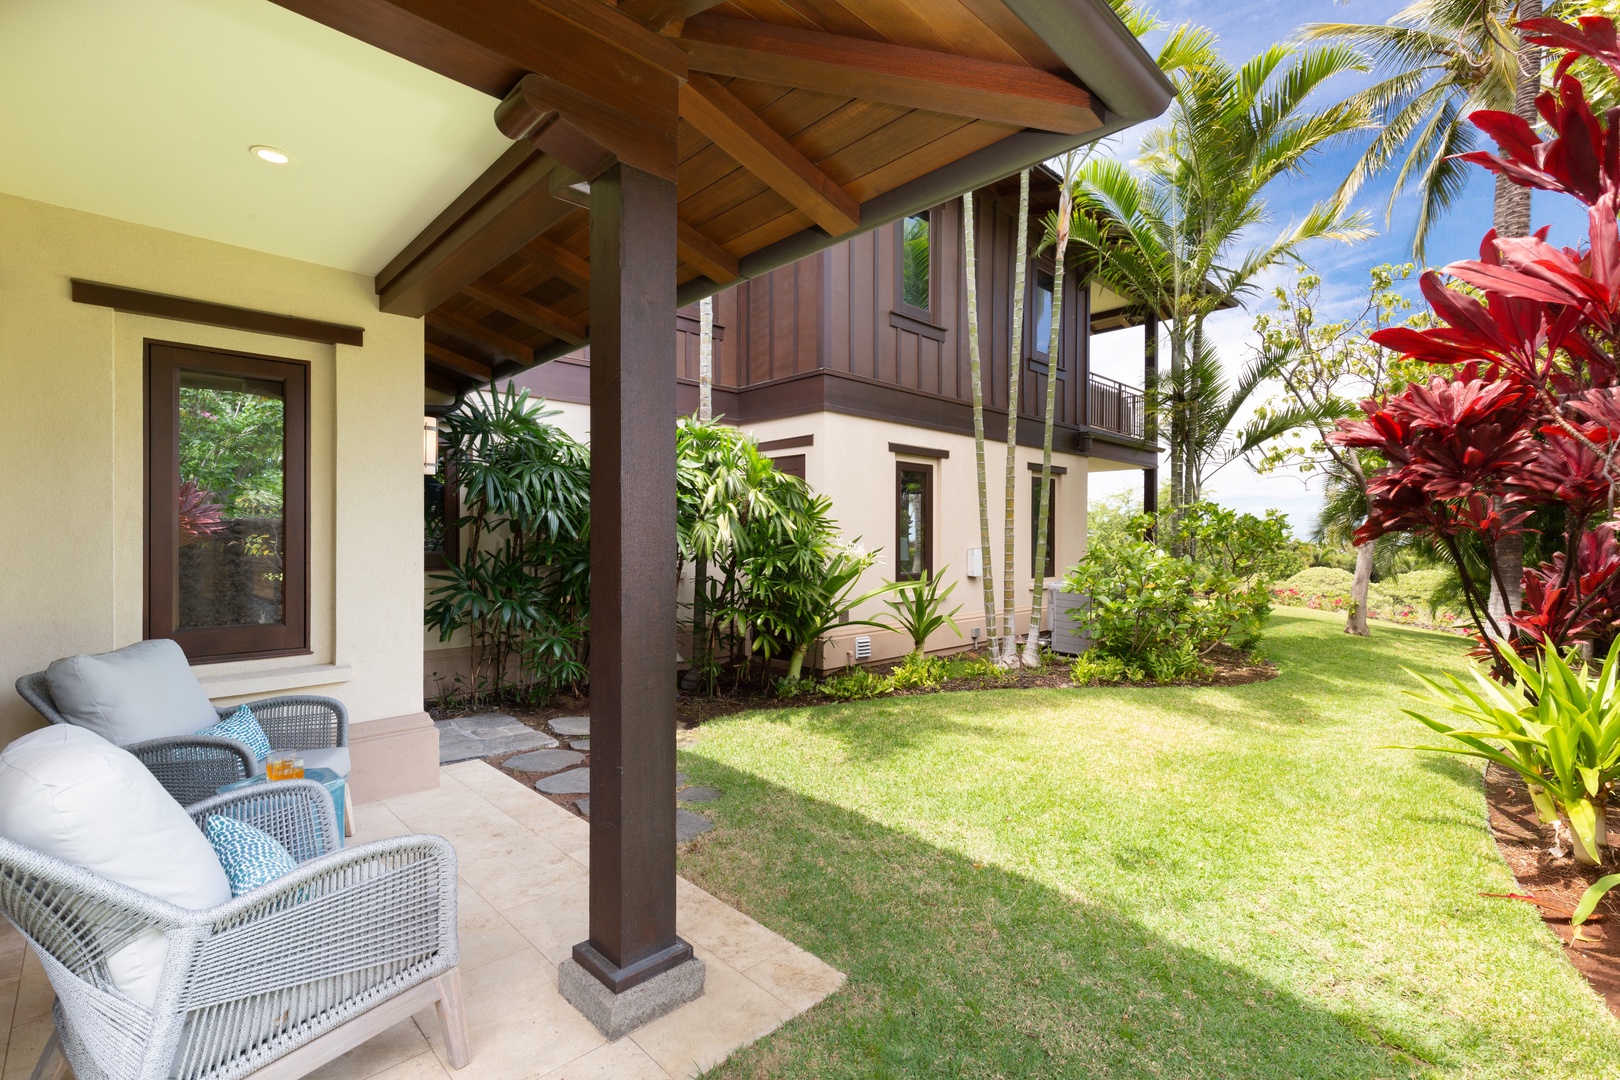 Kailua-Kona Vacation Rentals, 3BD Hali'ipua Villa (120) at Four Seasons Resort at Hualalai - Exterior view of the gorgeous villa